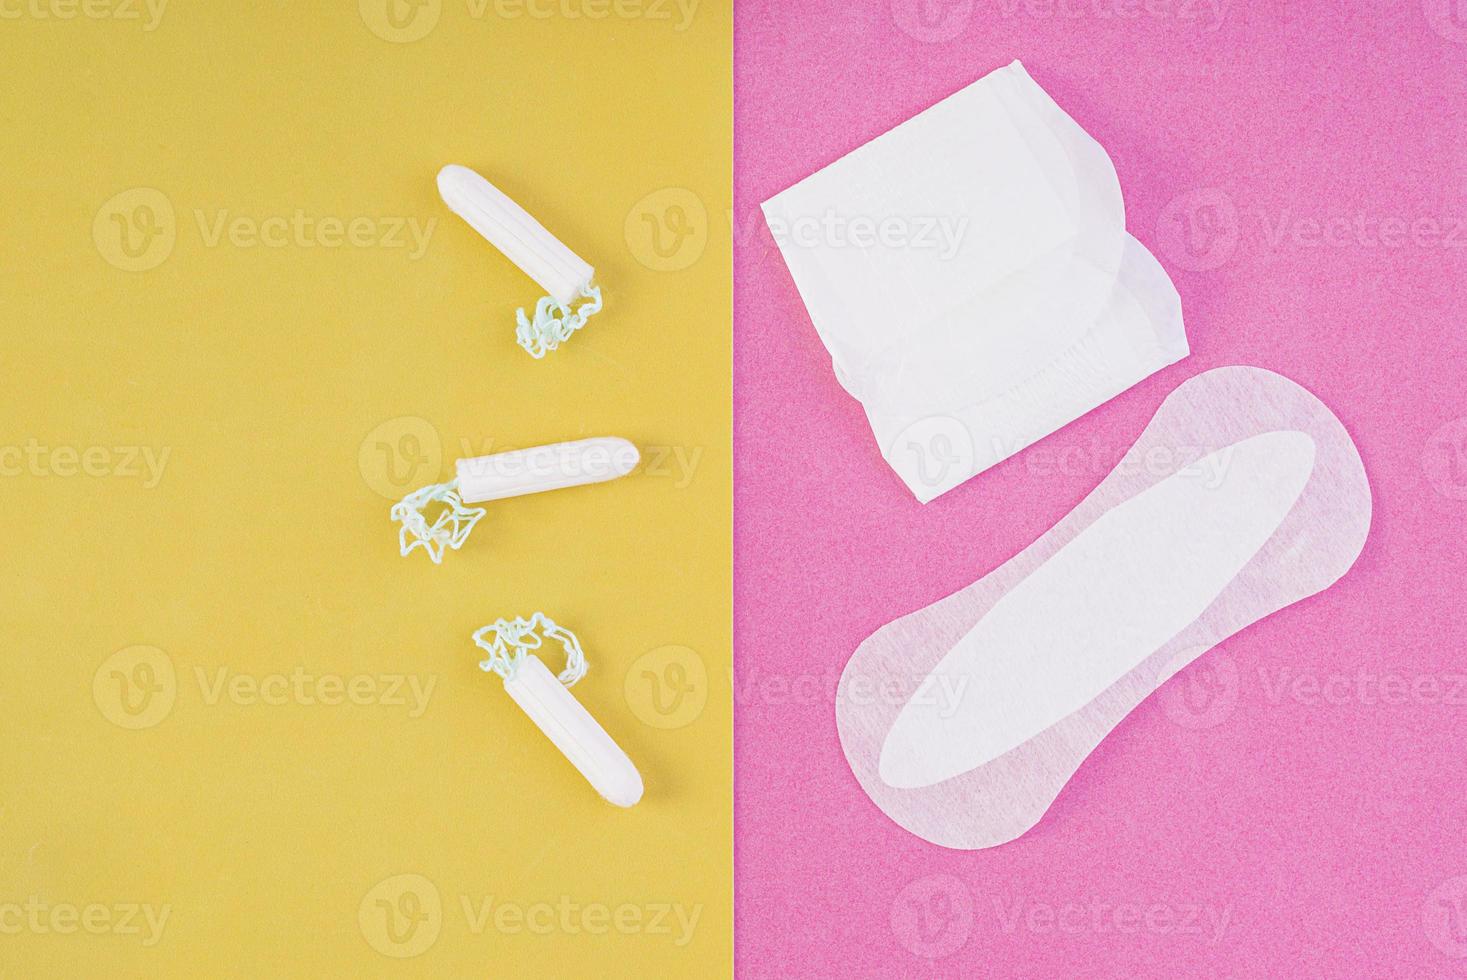 hygiënische zorg tijdens kritieke dagen. kiezen tussen een tampon en een maandverband. menstruatiecyclus. hygiëneproducten voor vrouwen. bovenaanzicht foto